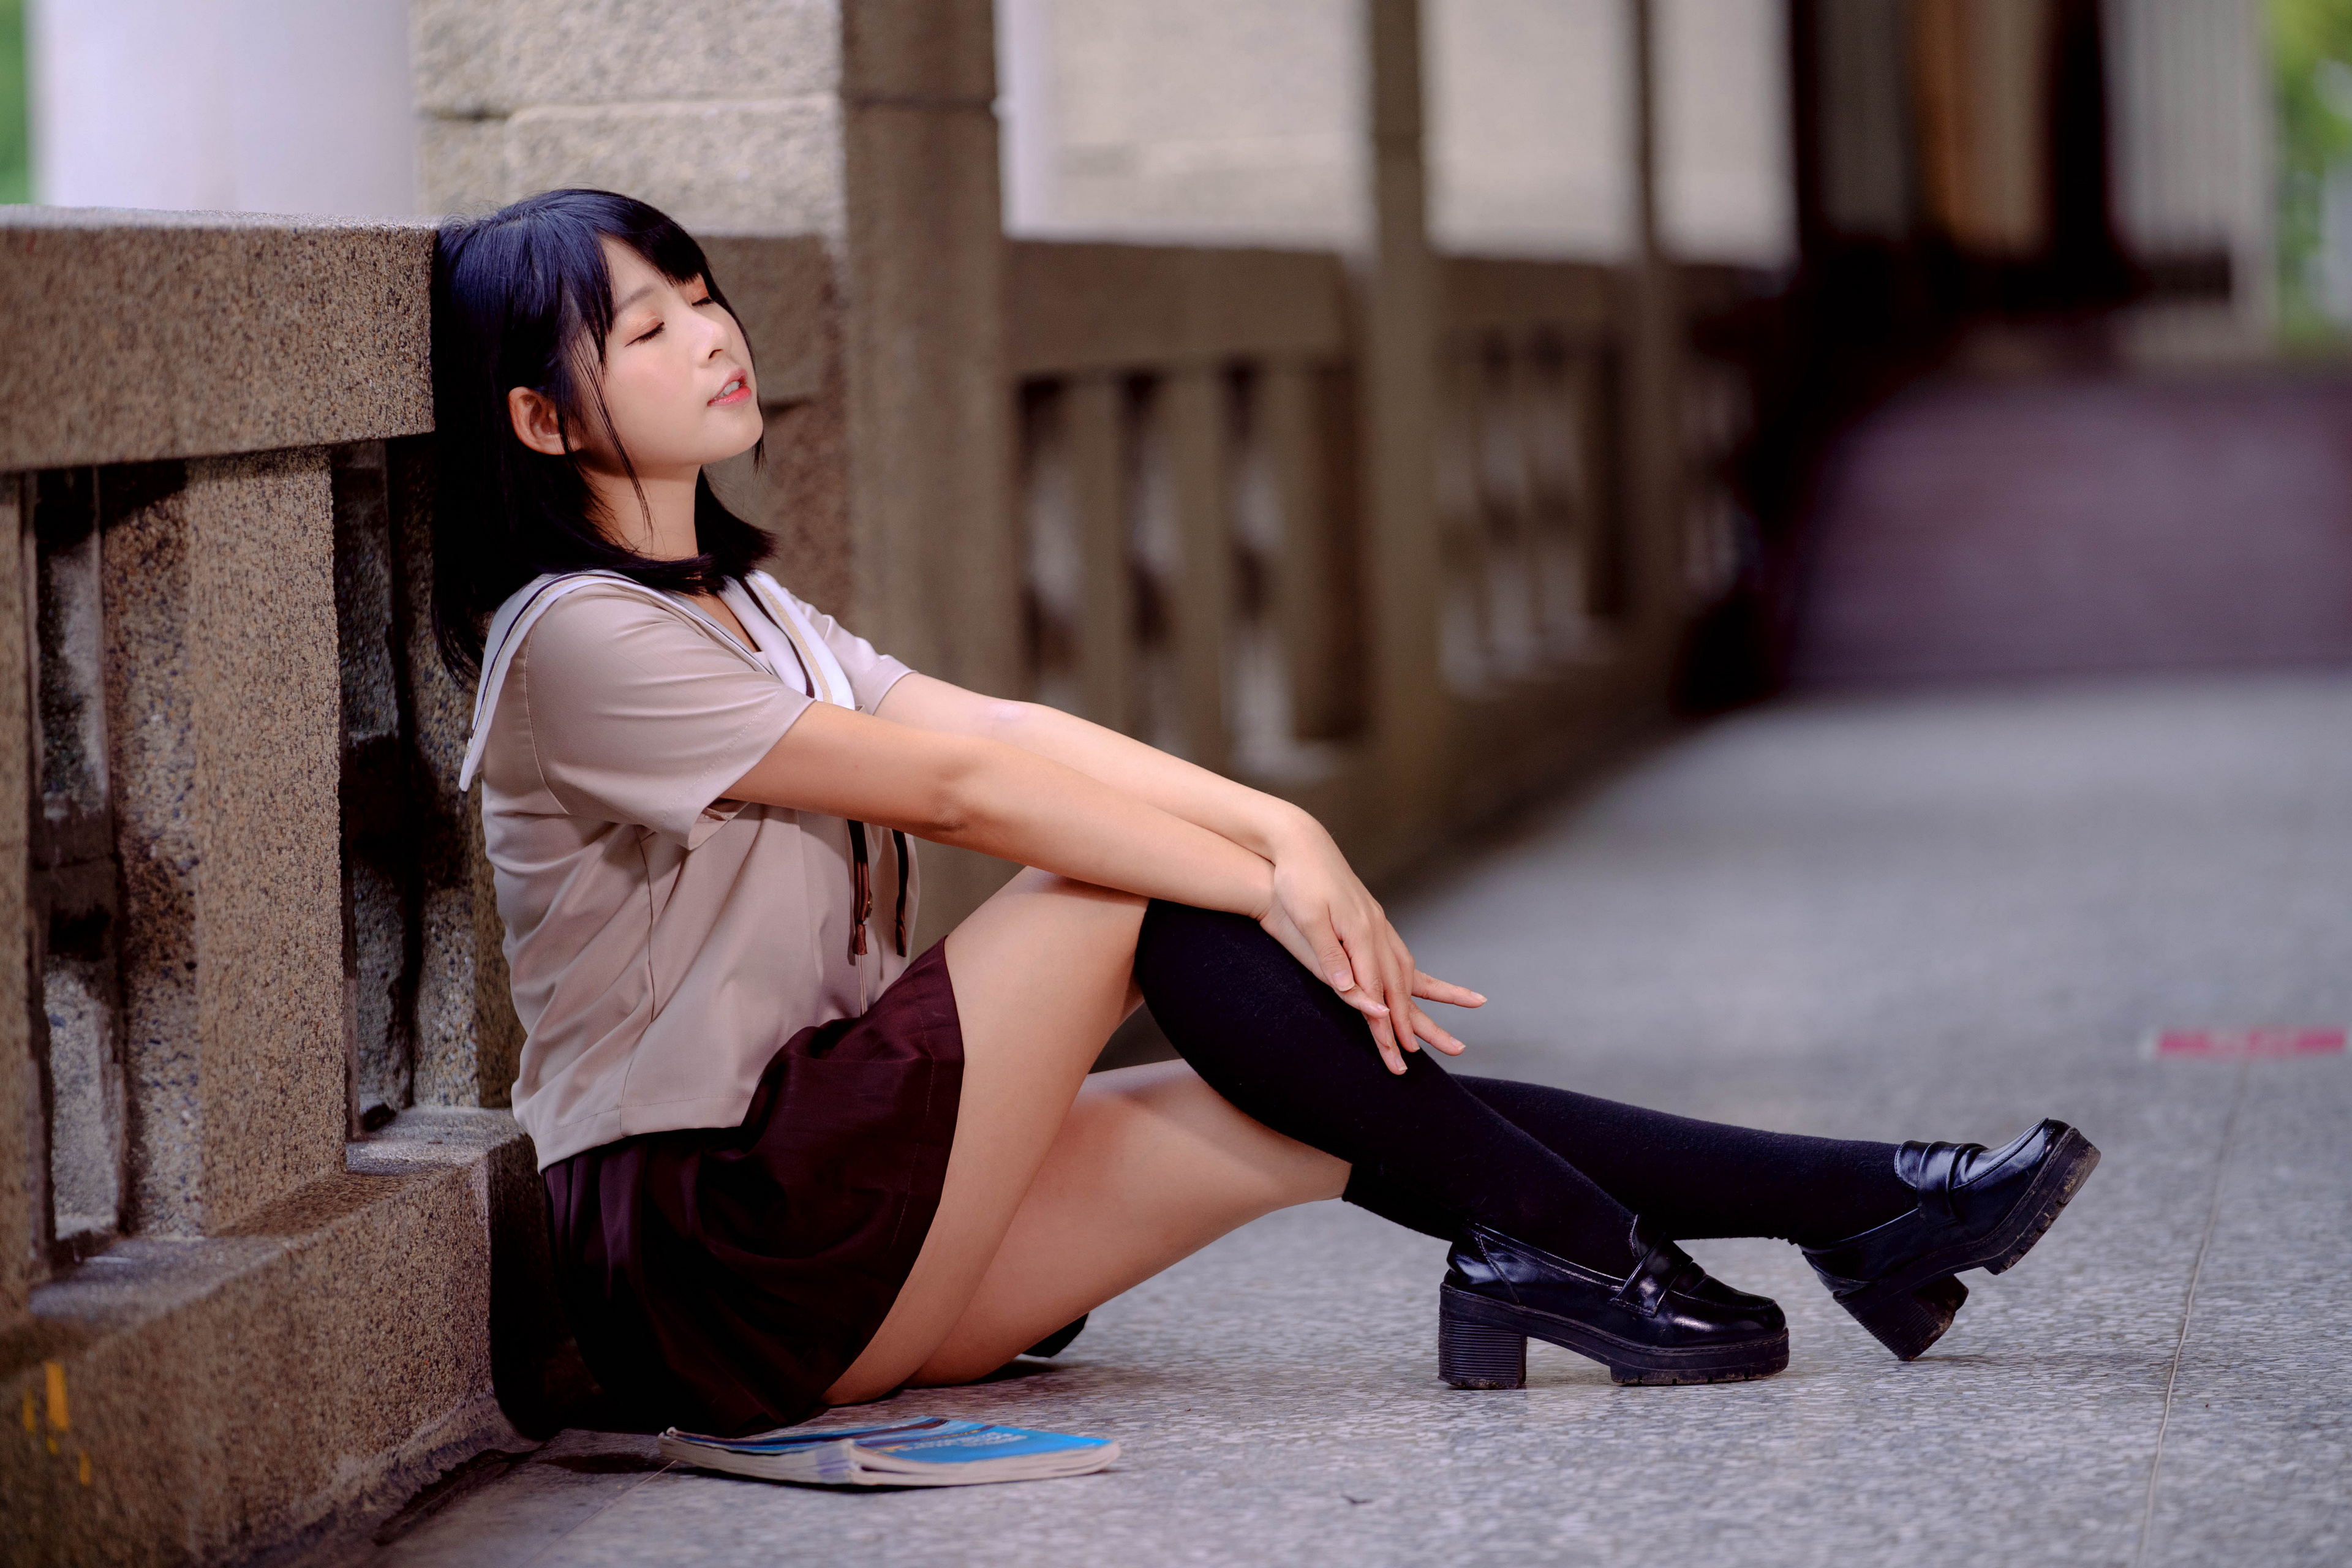 Asian Model Women Long Hair Dark Hair Knee High Socks Sitting 3840x2560